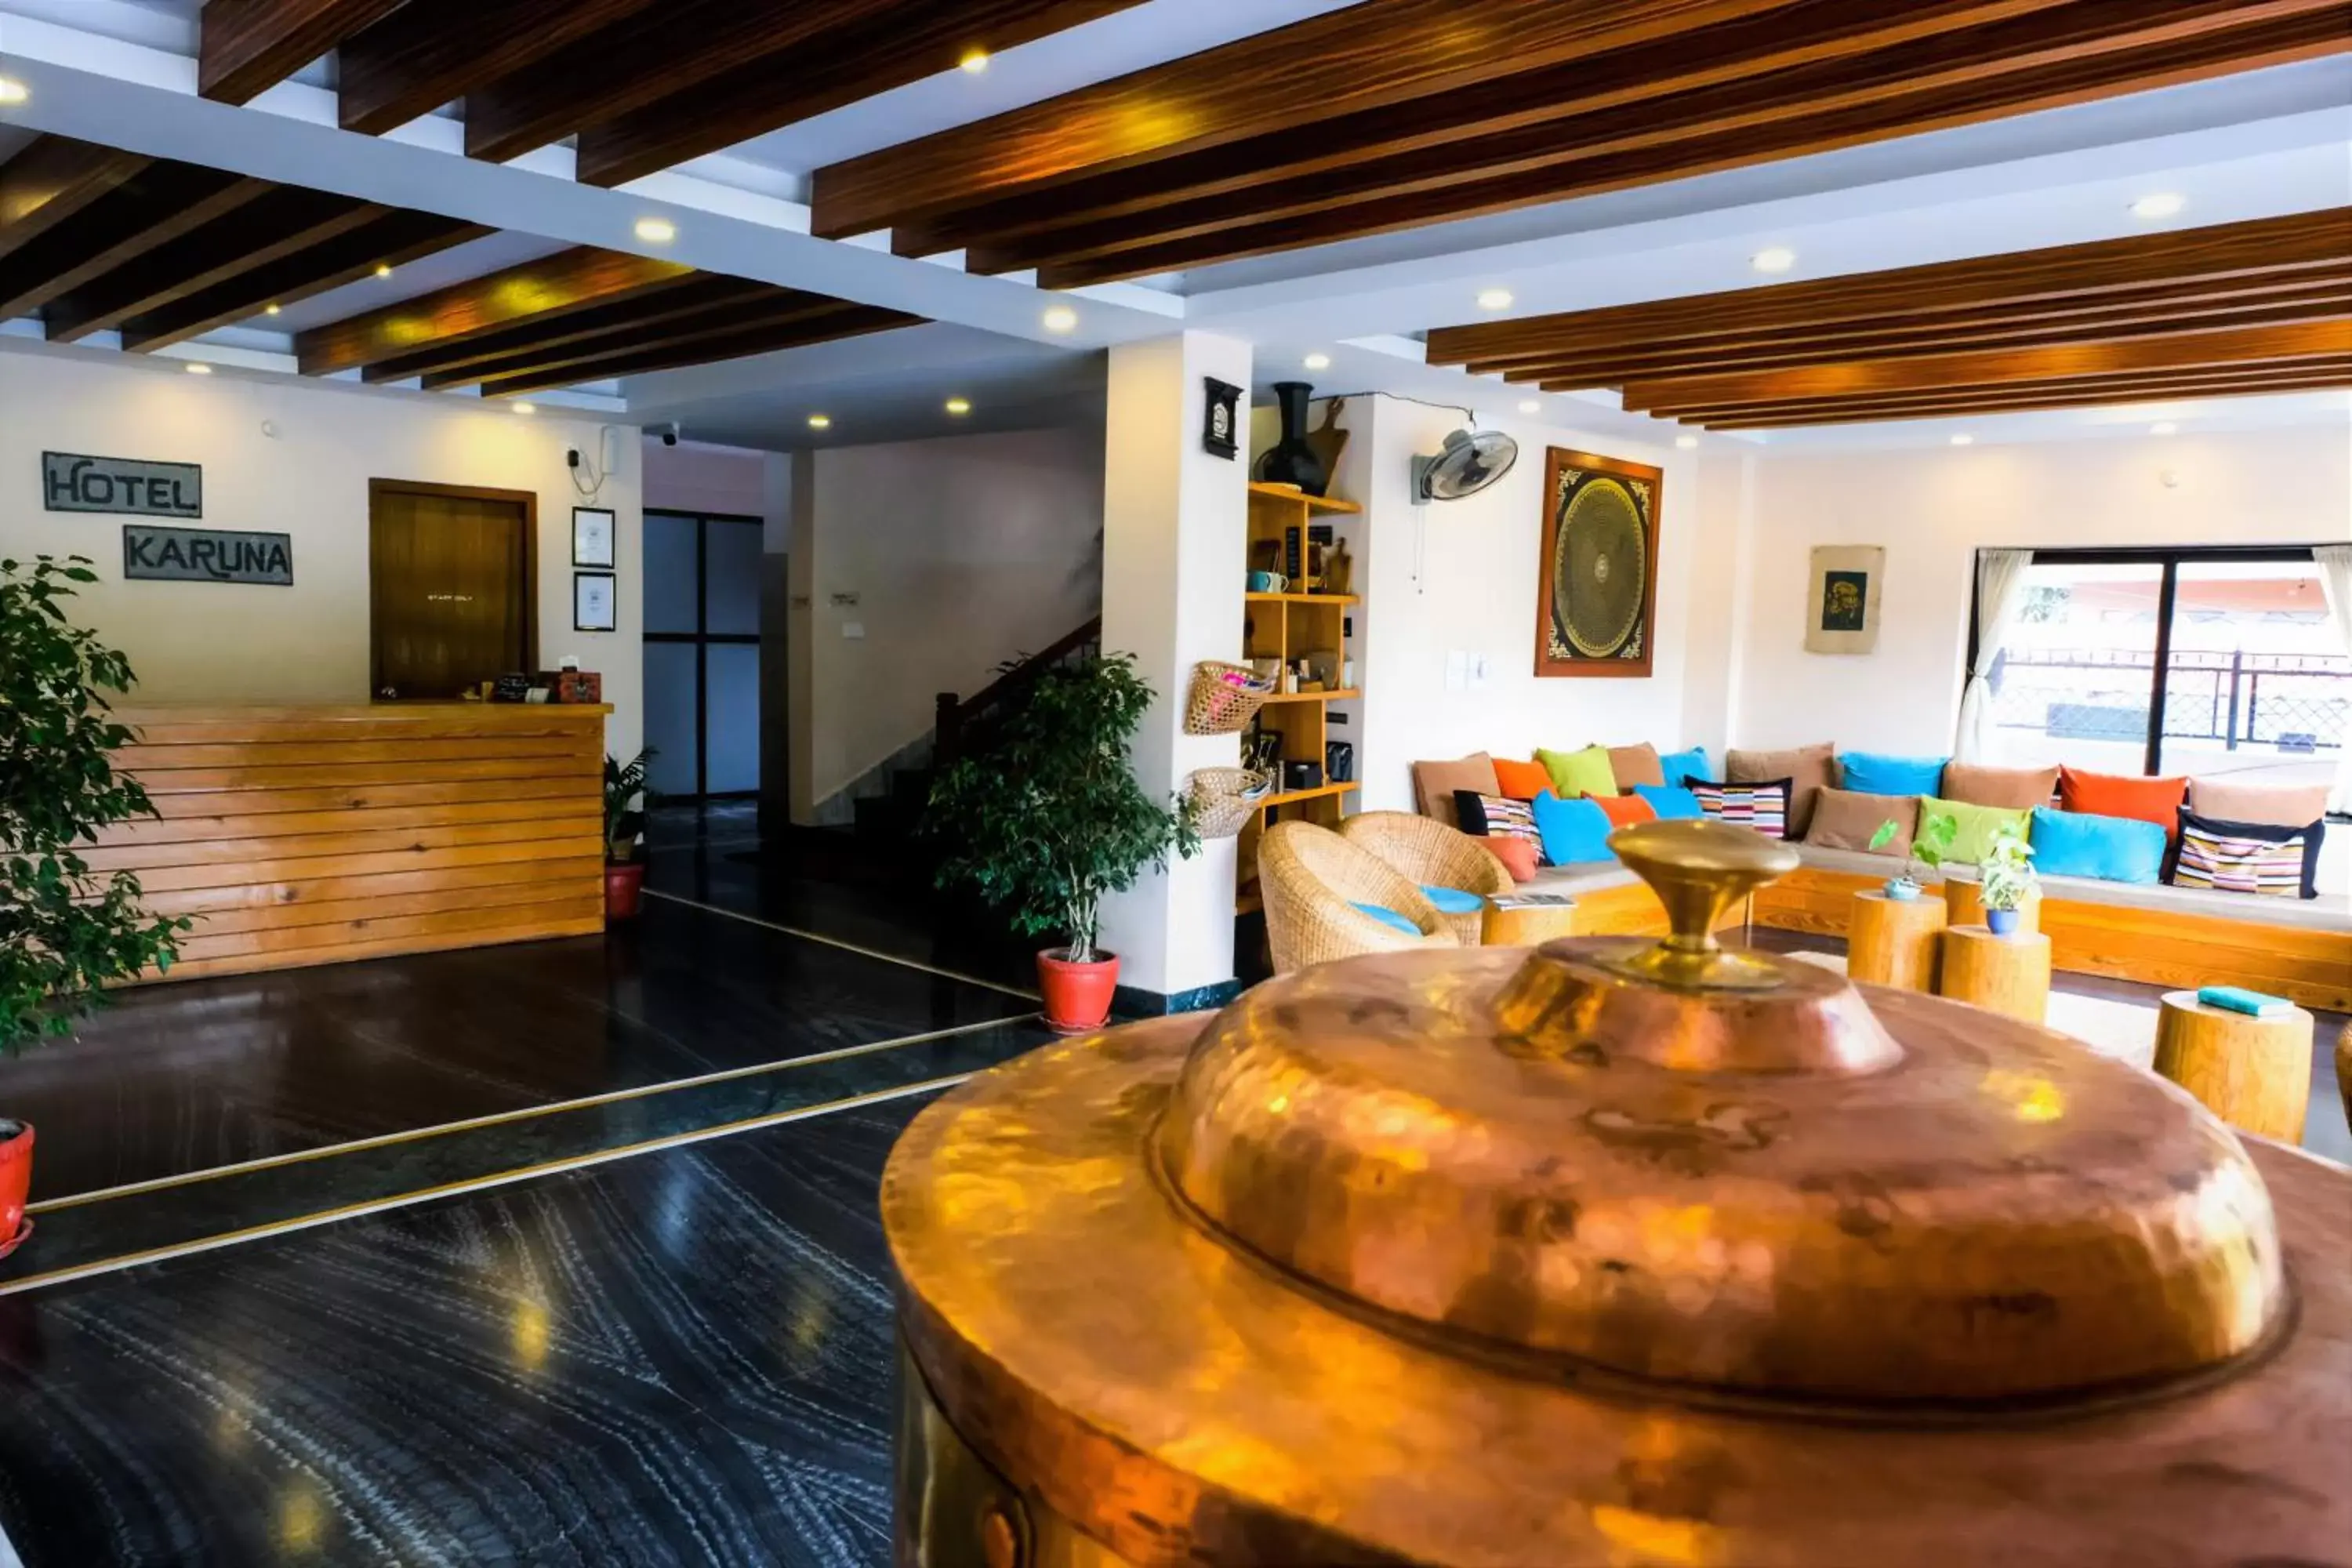 Lobby or reception, Lobby/Reception in Hotel Karuna